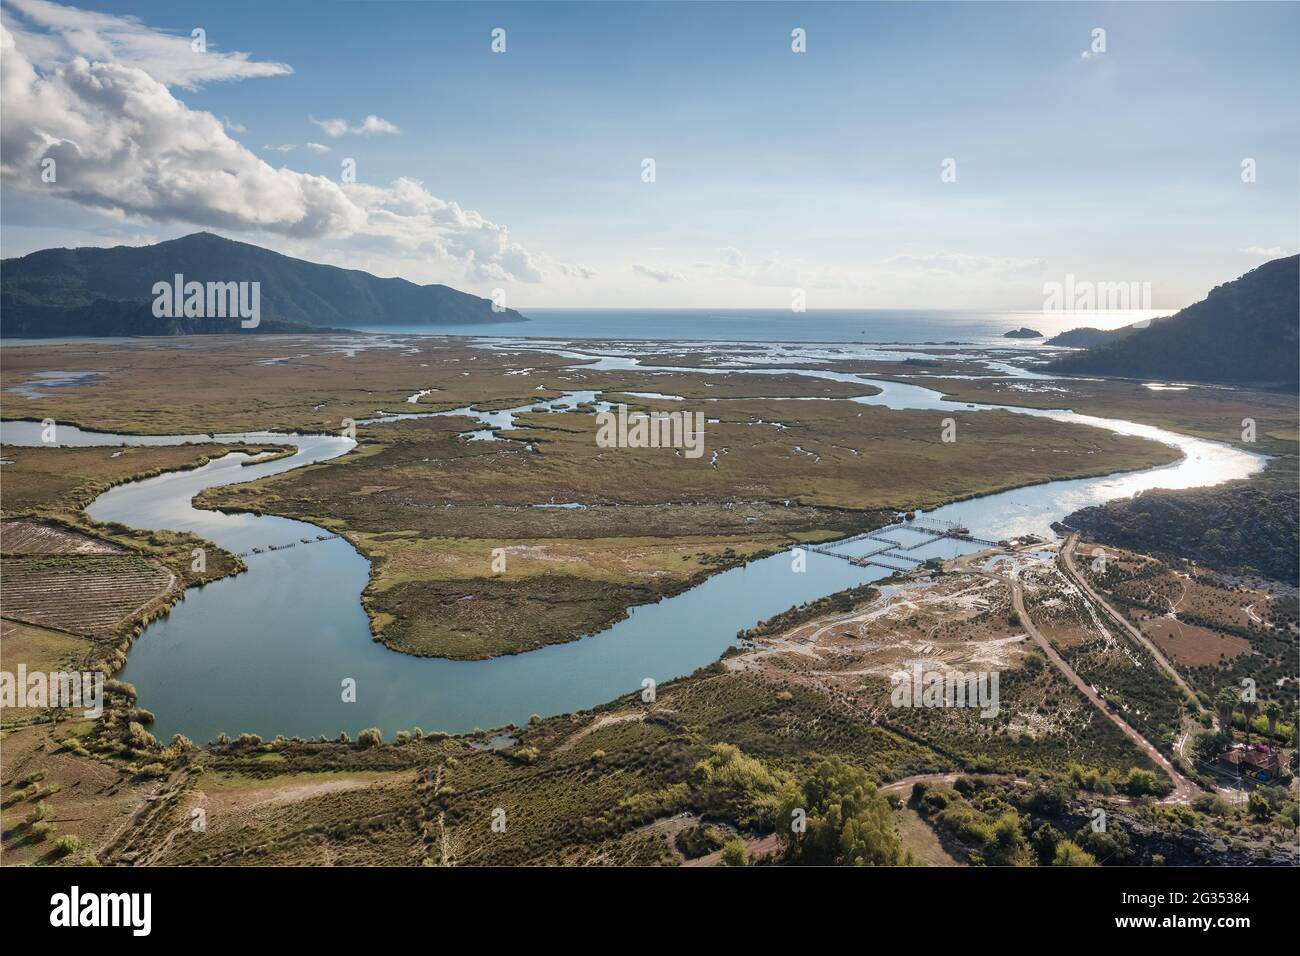 Le delta de la rivière Dalyan, la plage d'Iztuzu et les montagnes environnantes à Dalyan, Turquie Banque D'Images